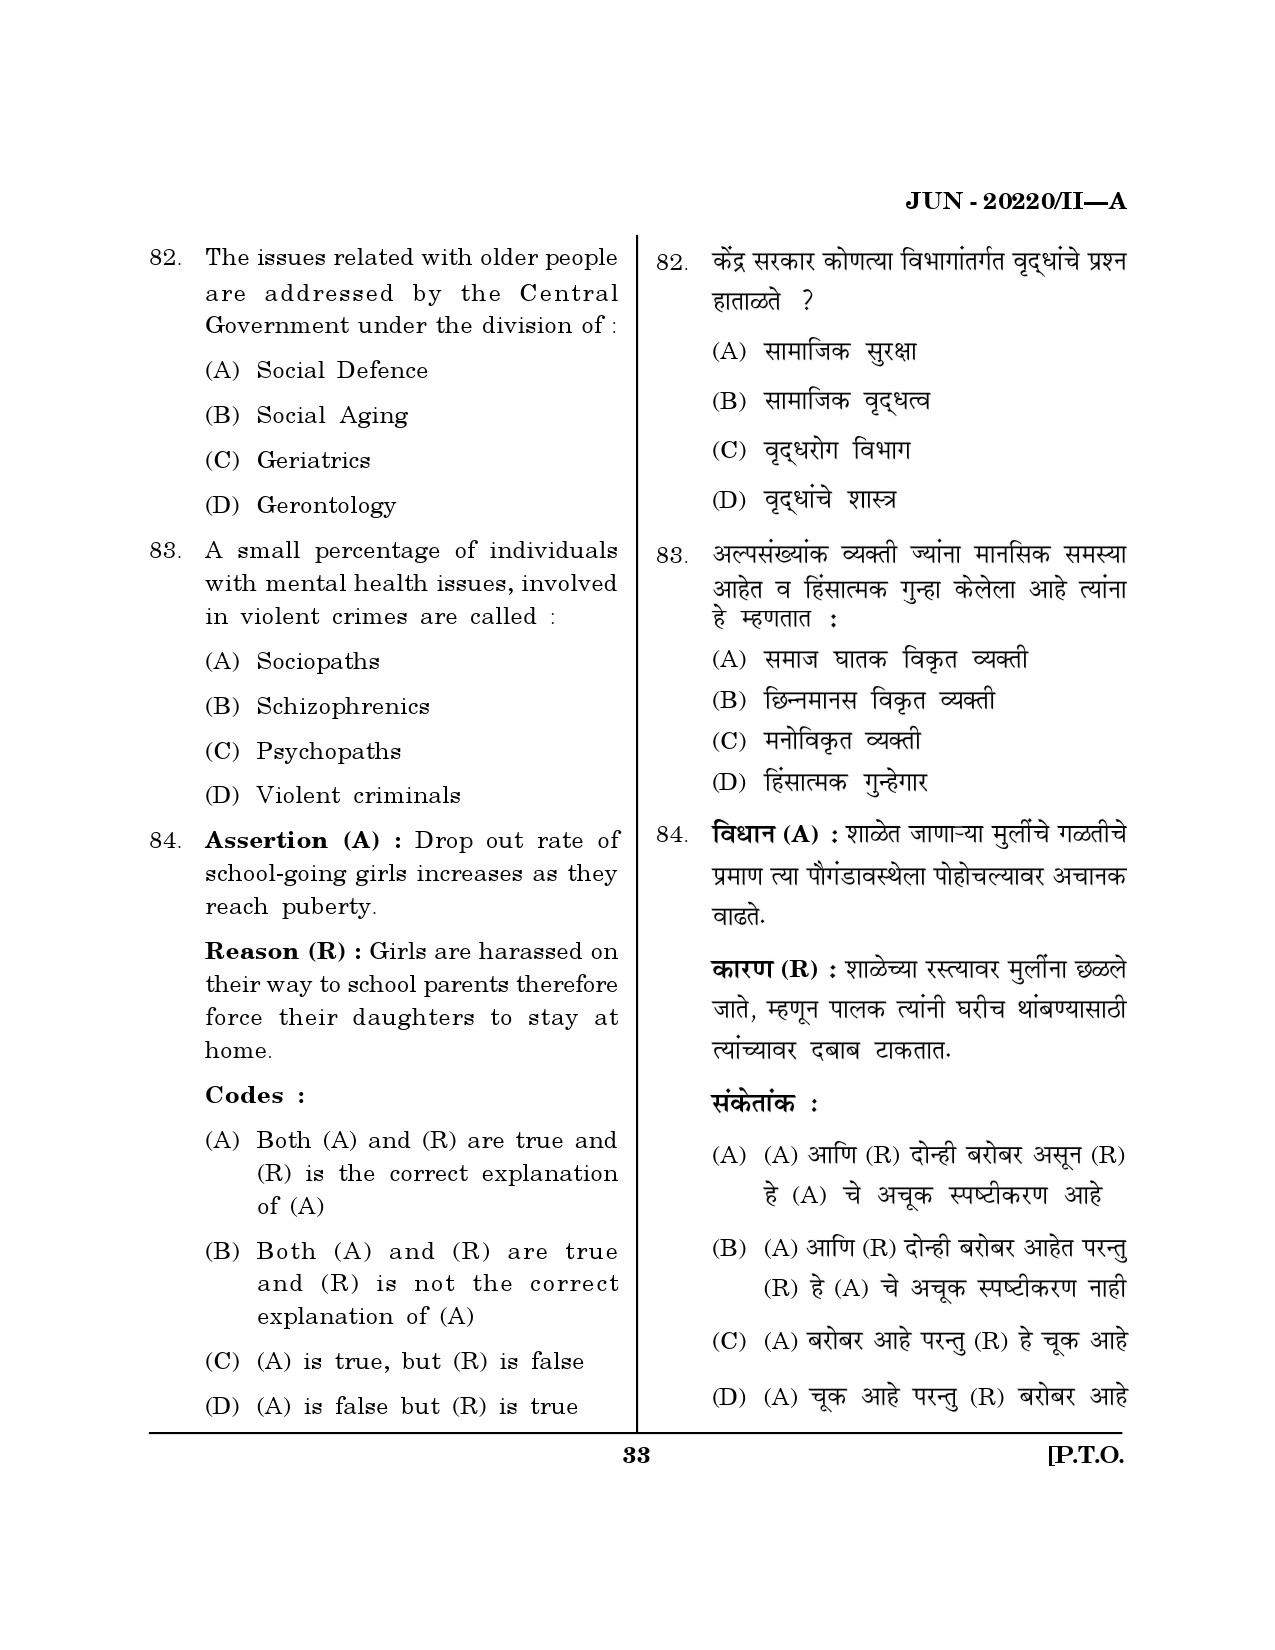 Maharashtra SET Social Work Question Paper II June 2020 32